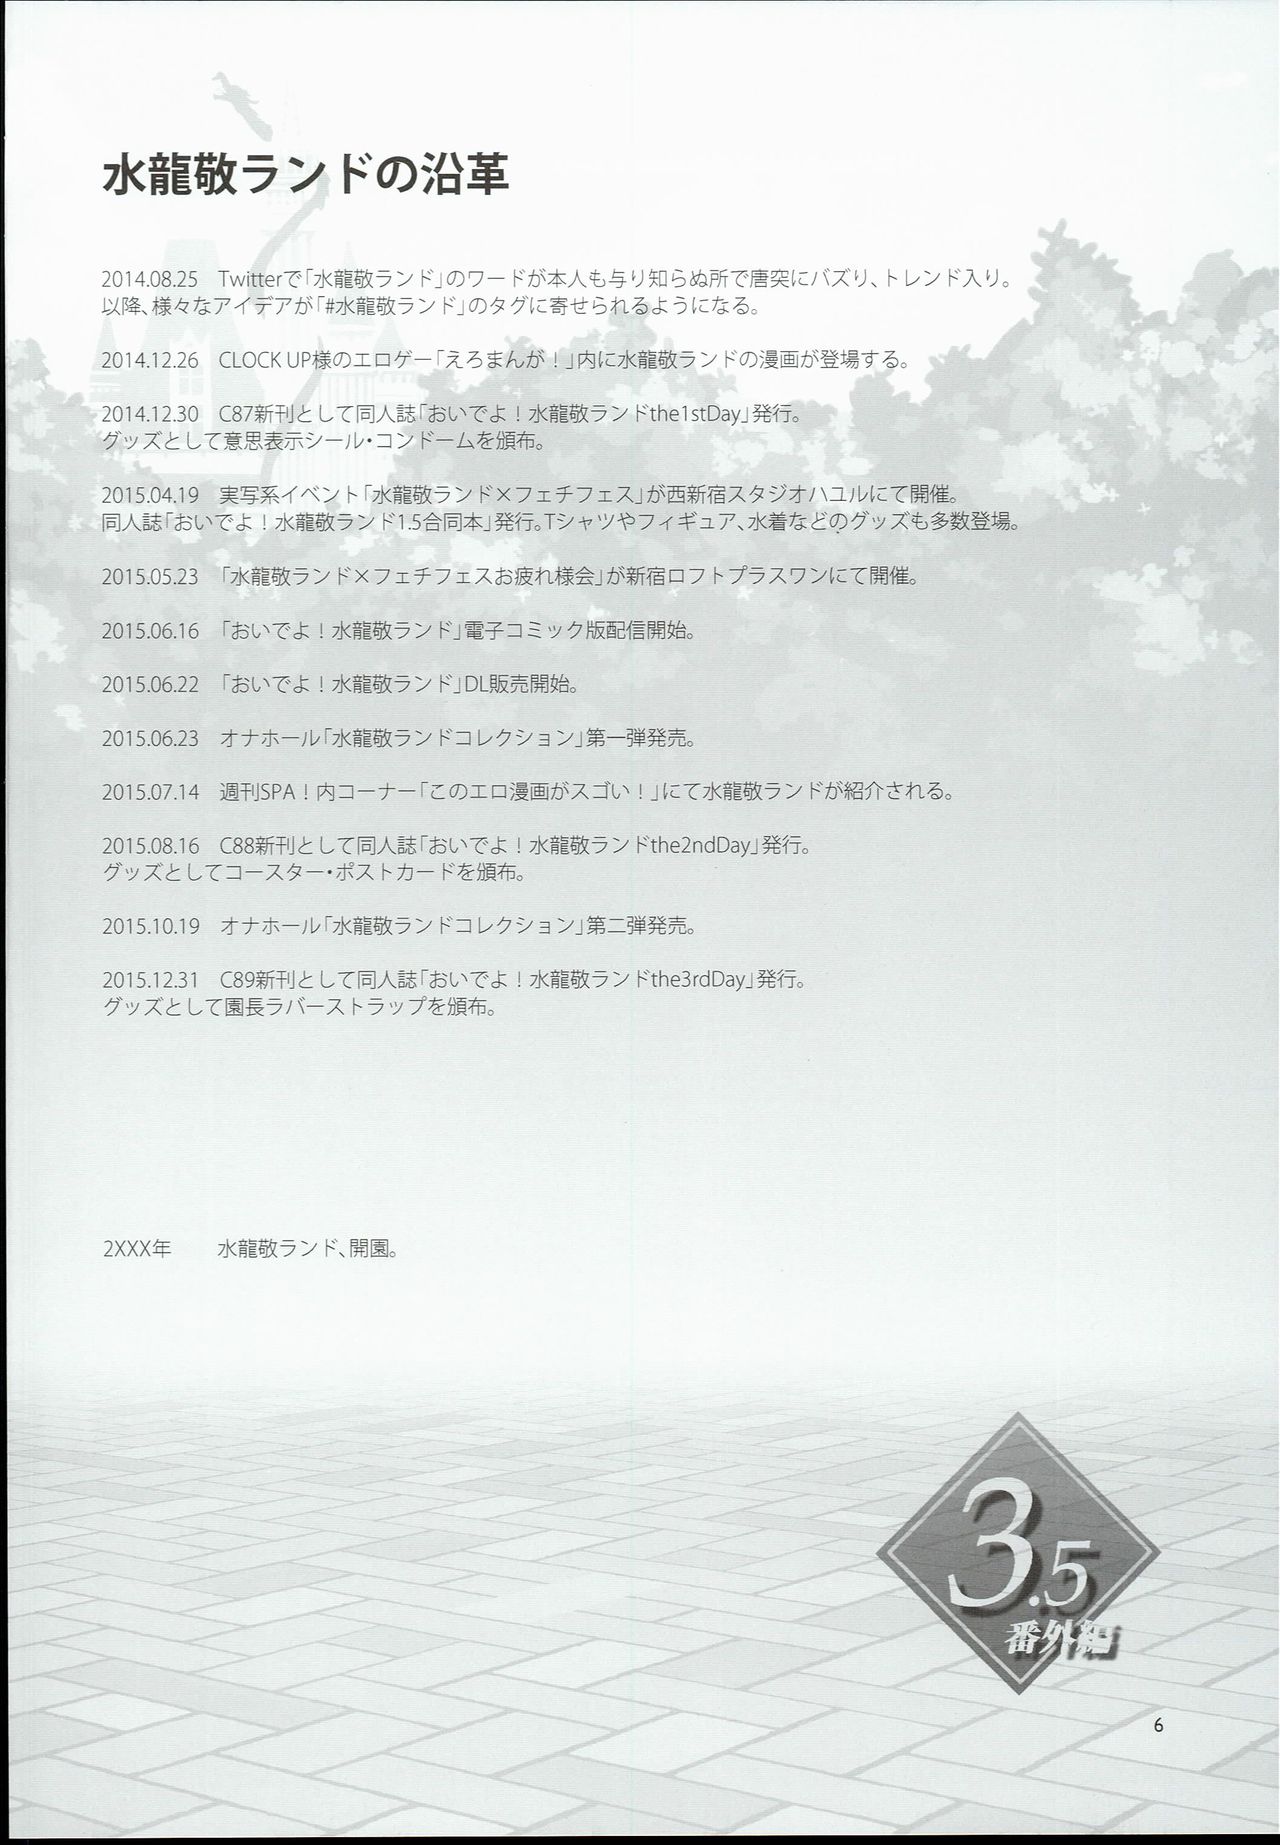 (COMIC1☆10) [Alice no Takarabako (Mizuryu Kei)] Oideyo! Mizuryu Kei Land 3.5 Bangaihen (COMIC1☆10) [ありすの宝箱 (水龍敬)] おいでよ!水龍敬ランド 3.5番外編